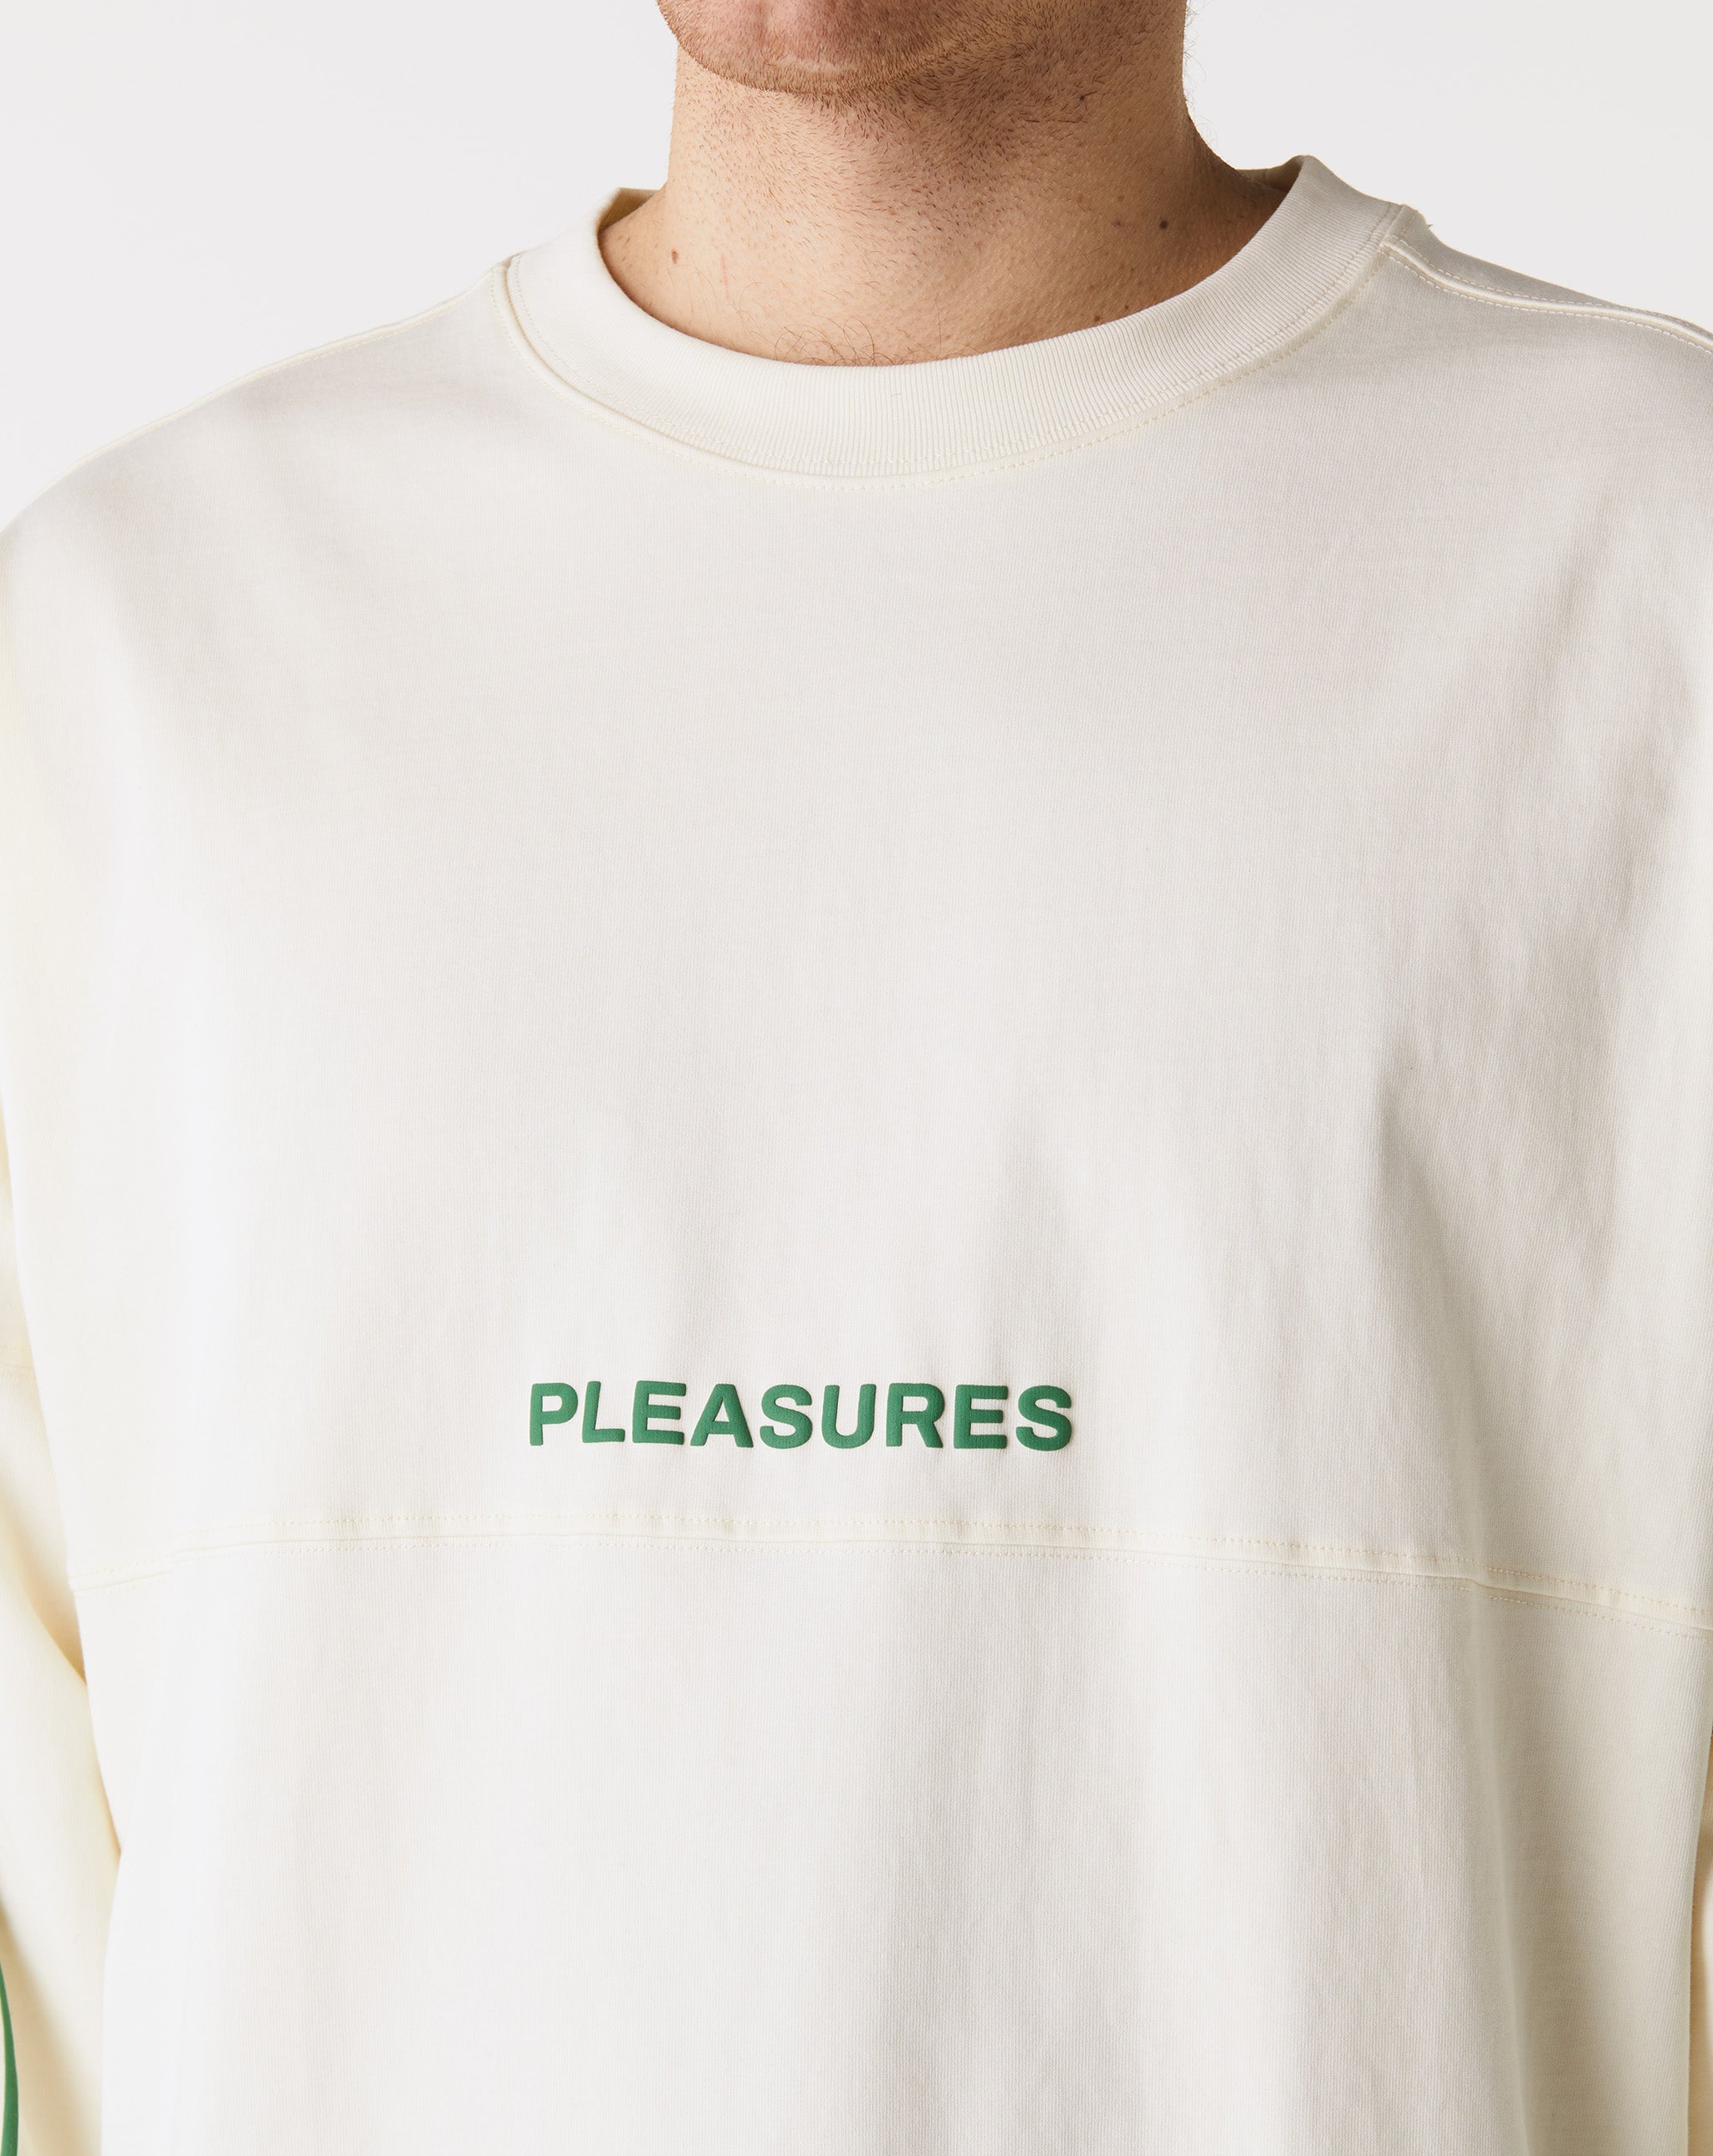 Pleasures Maximize Jersey  - XHIBITION